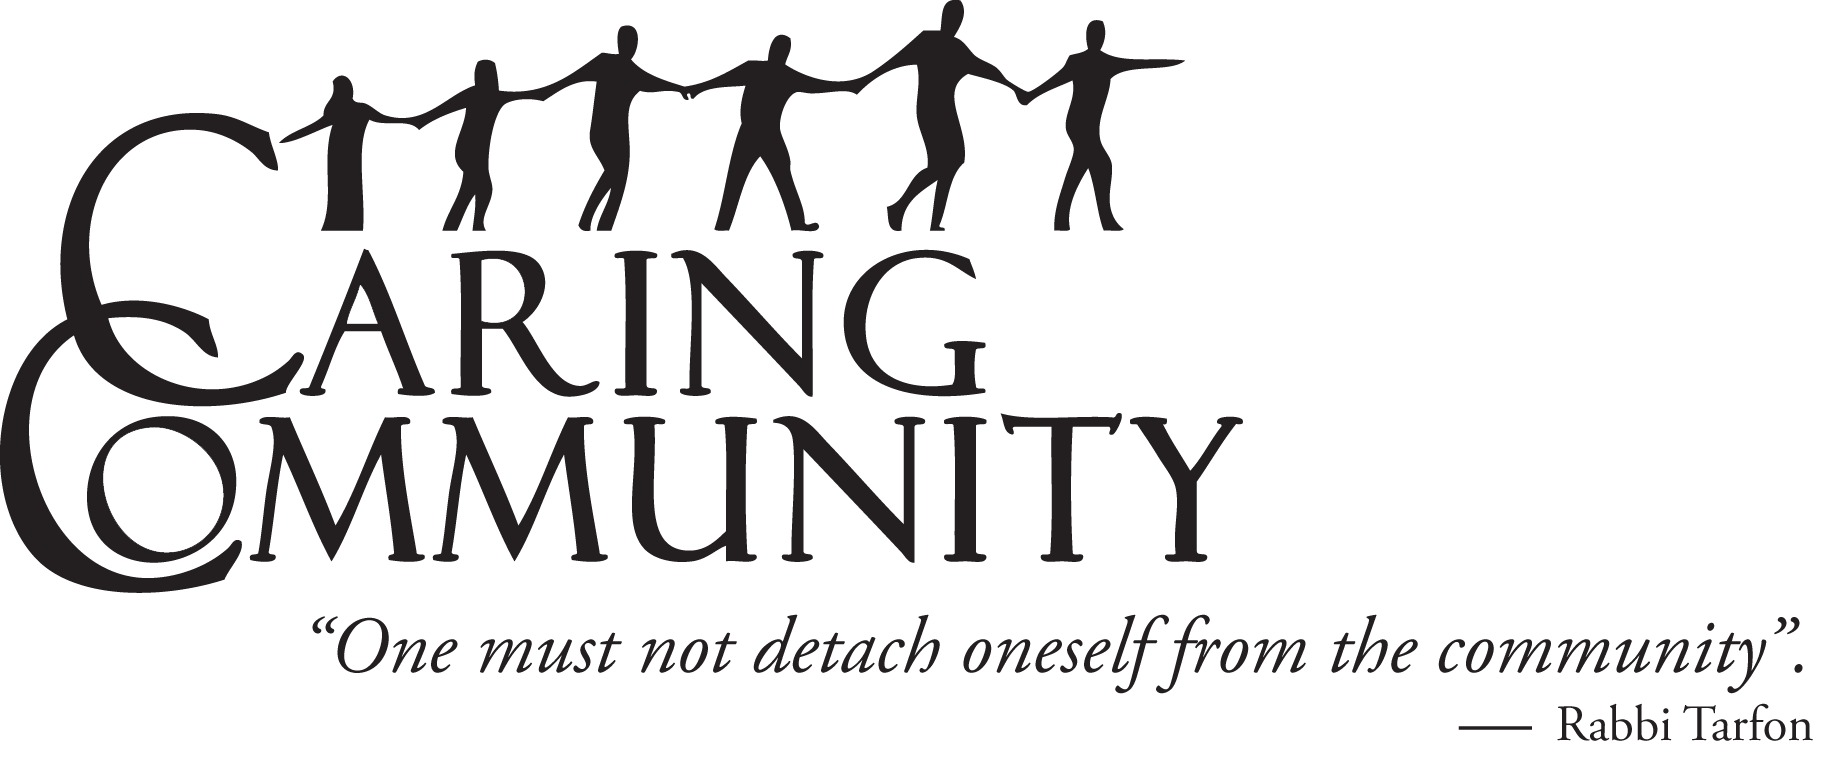 caringcommunity_logo